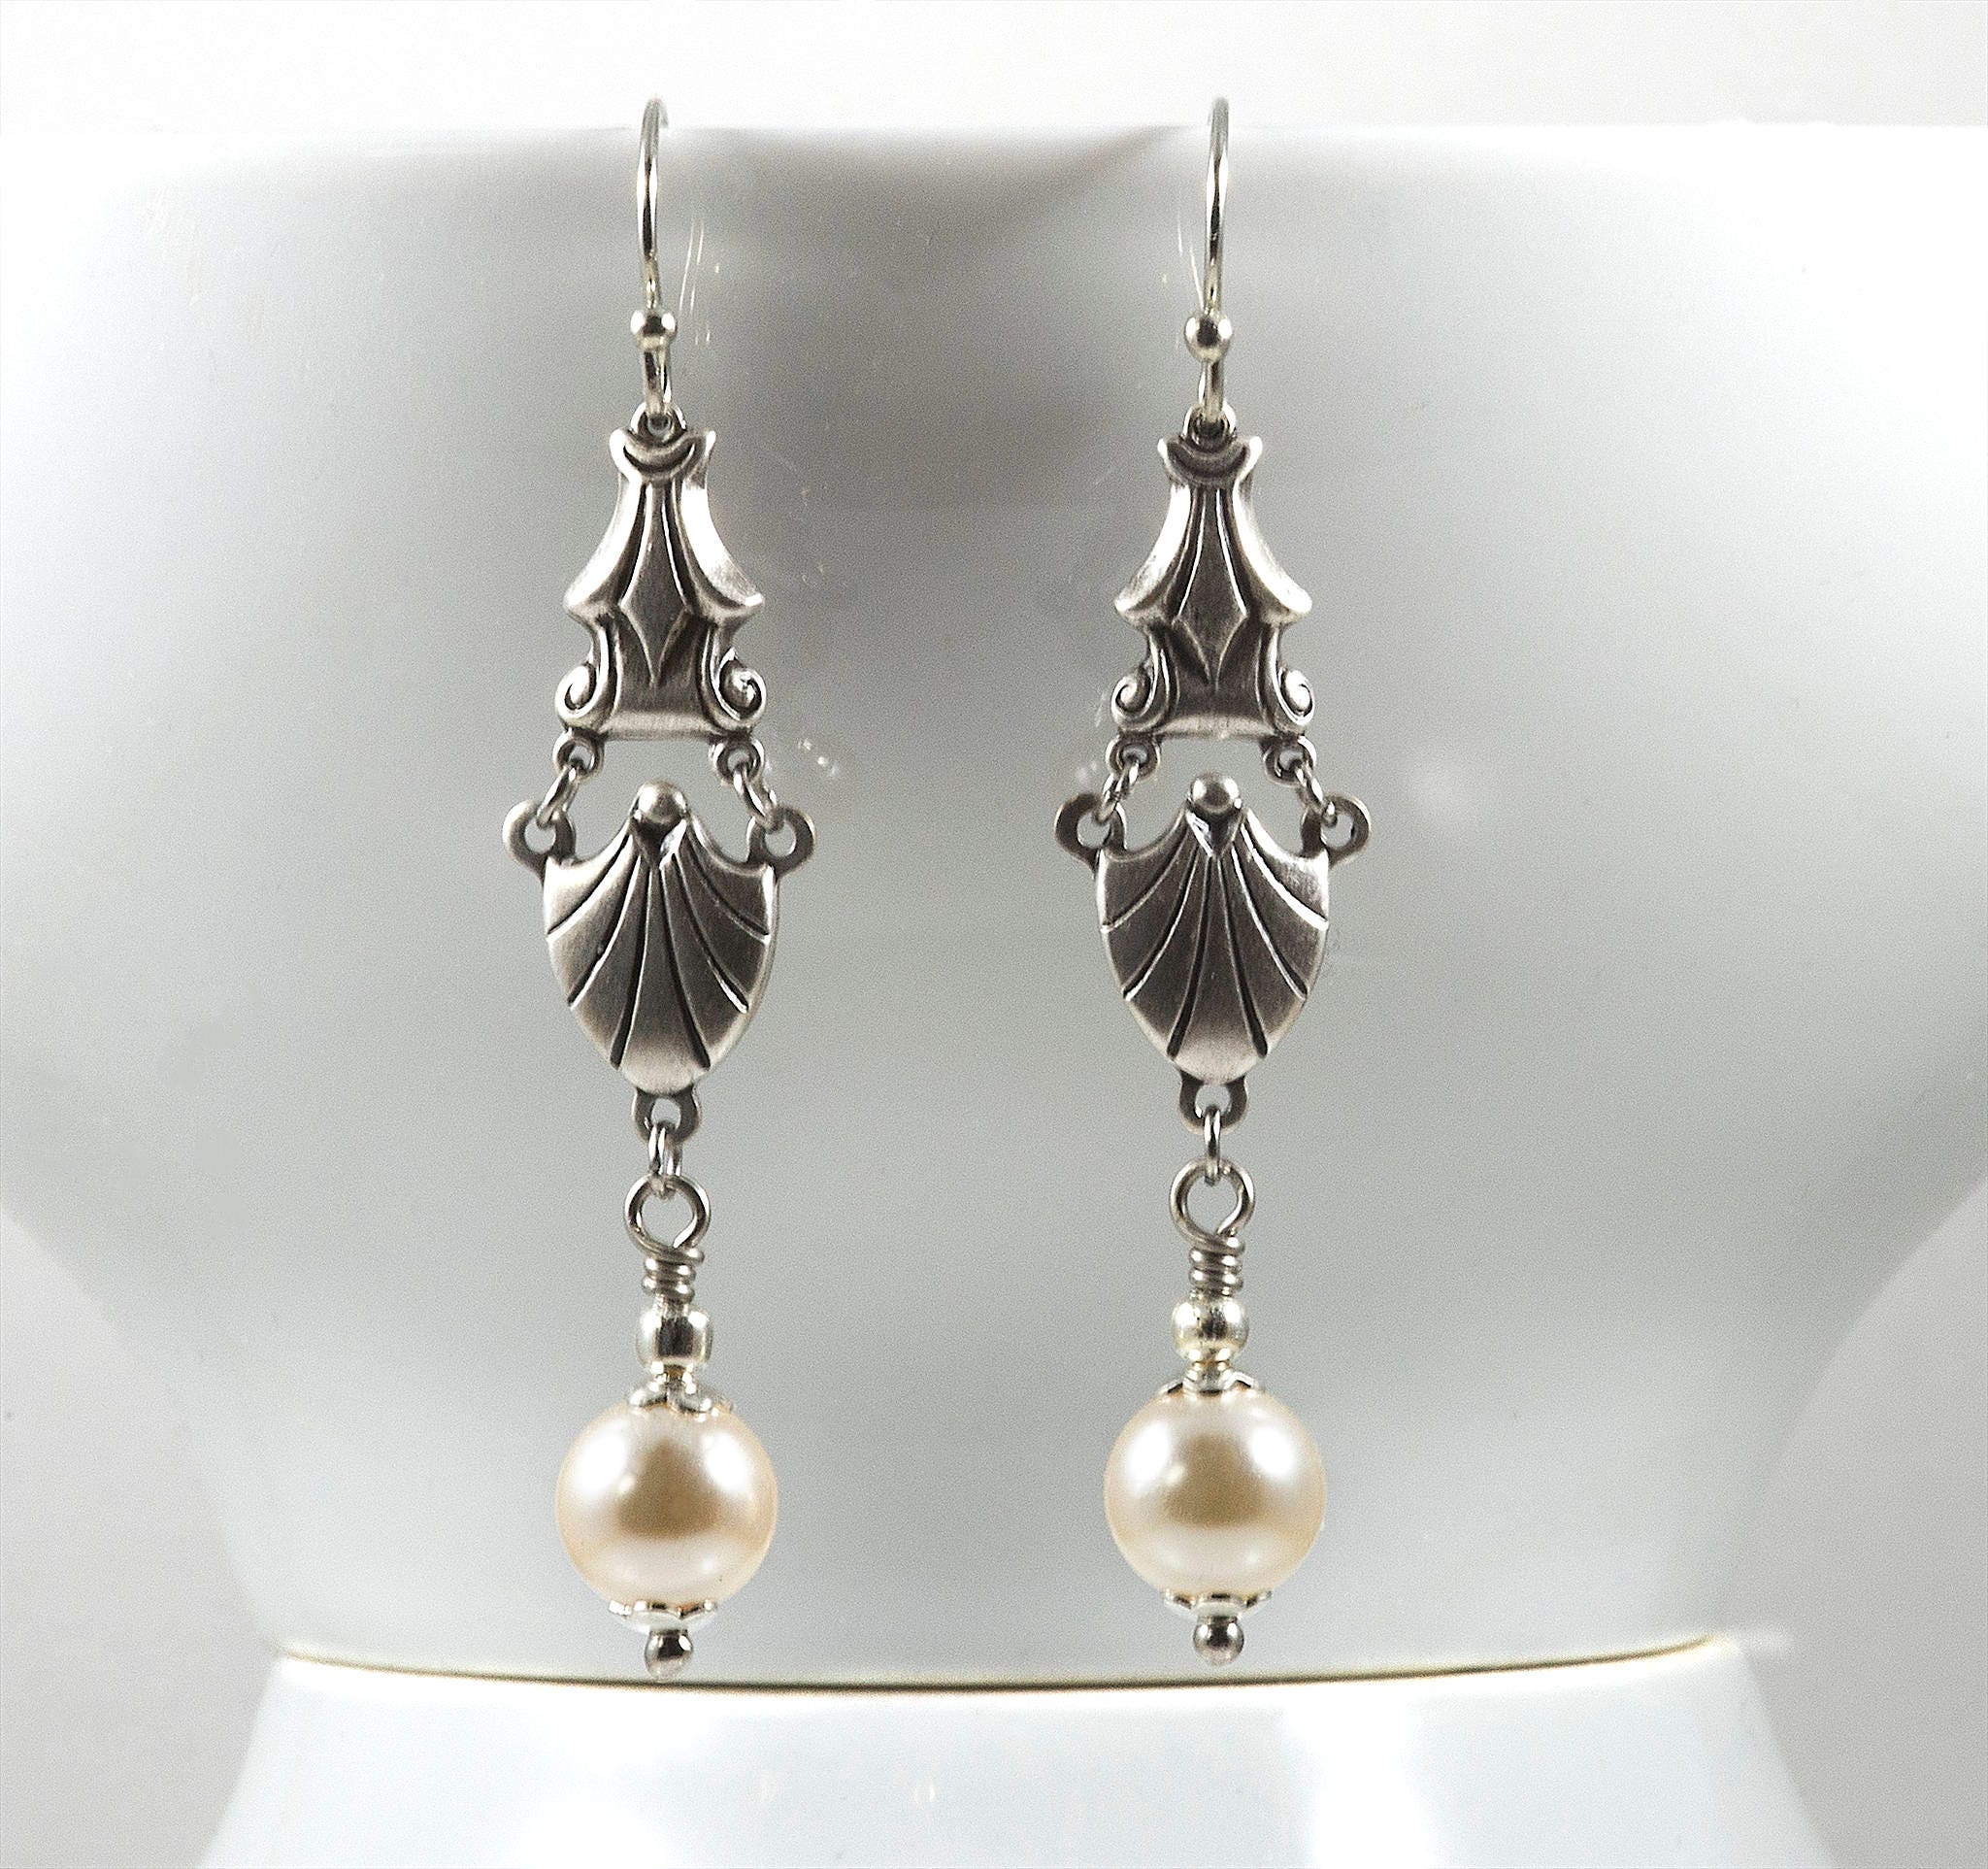 Art Deco Style Earrings Swarovski Pearls Sterling Silver | Etsy